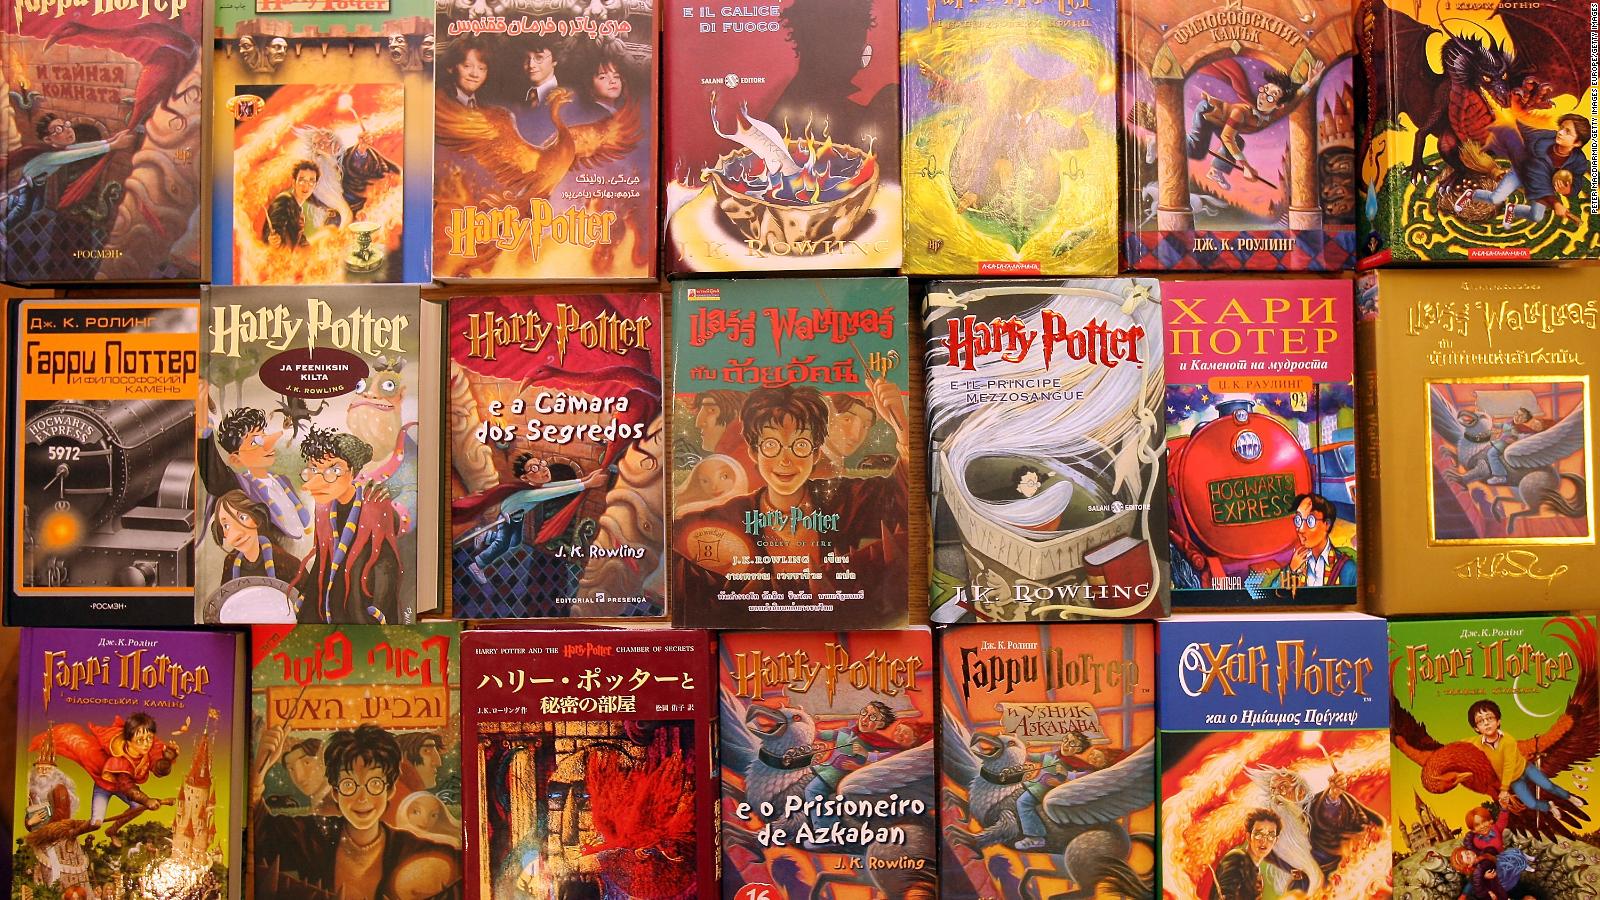 Harry Potter estos son los 5 libros más vendidos de la saga Video CNN